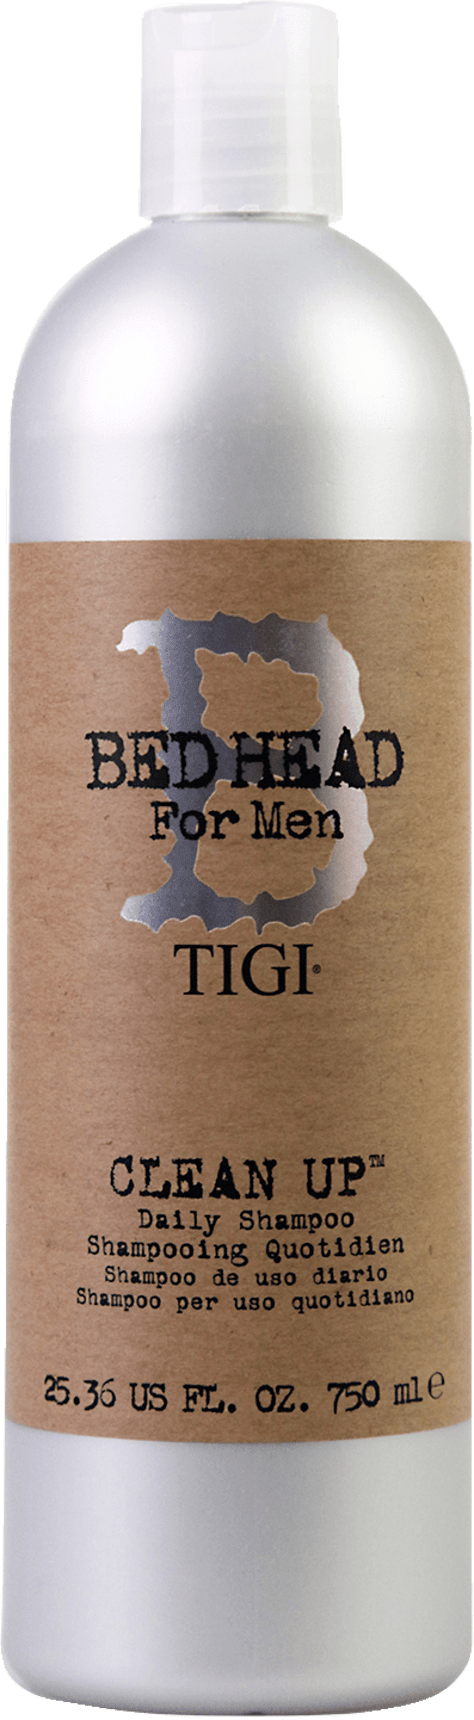 Tigi bed head b for men clean up шампунь для ежедневного применения для мужчин 750мл